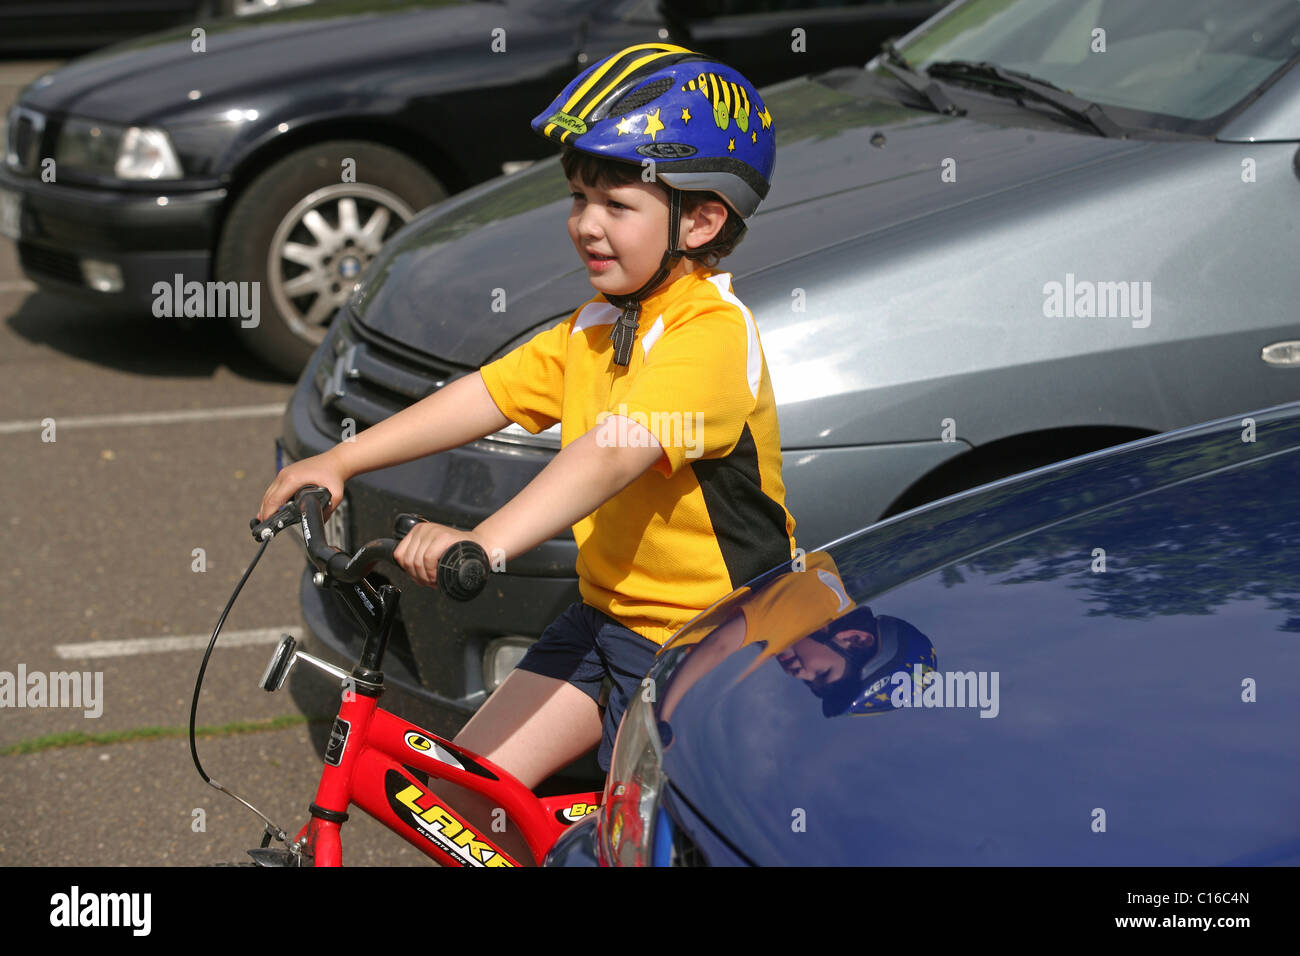 Cinque-anno-vecchio ragazzo che indossa un casco per bicicletta in sella a una moto Foto Stock